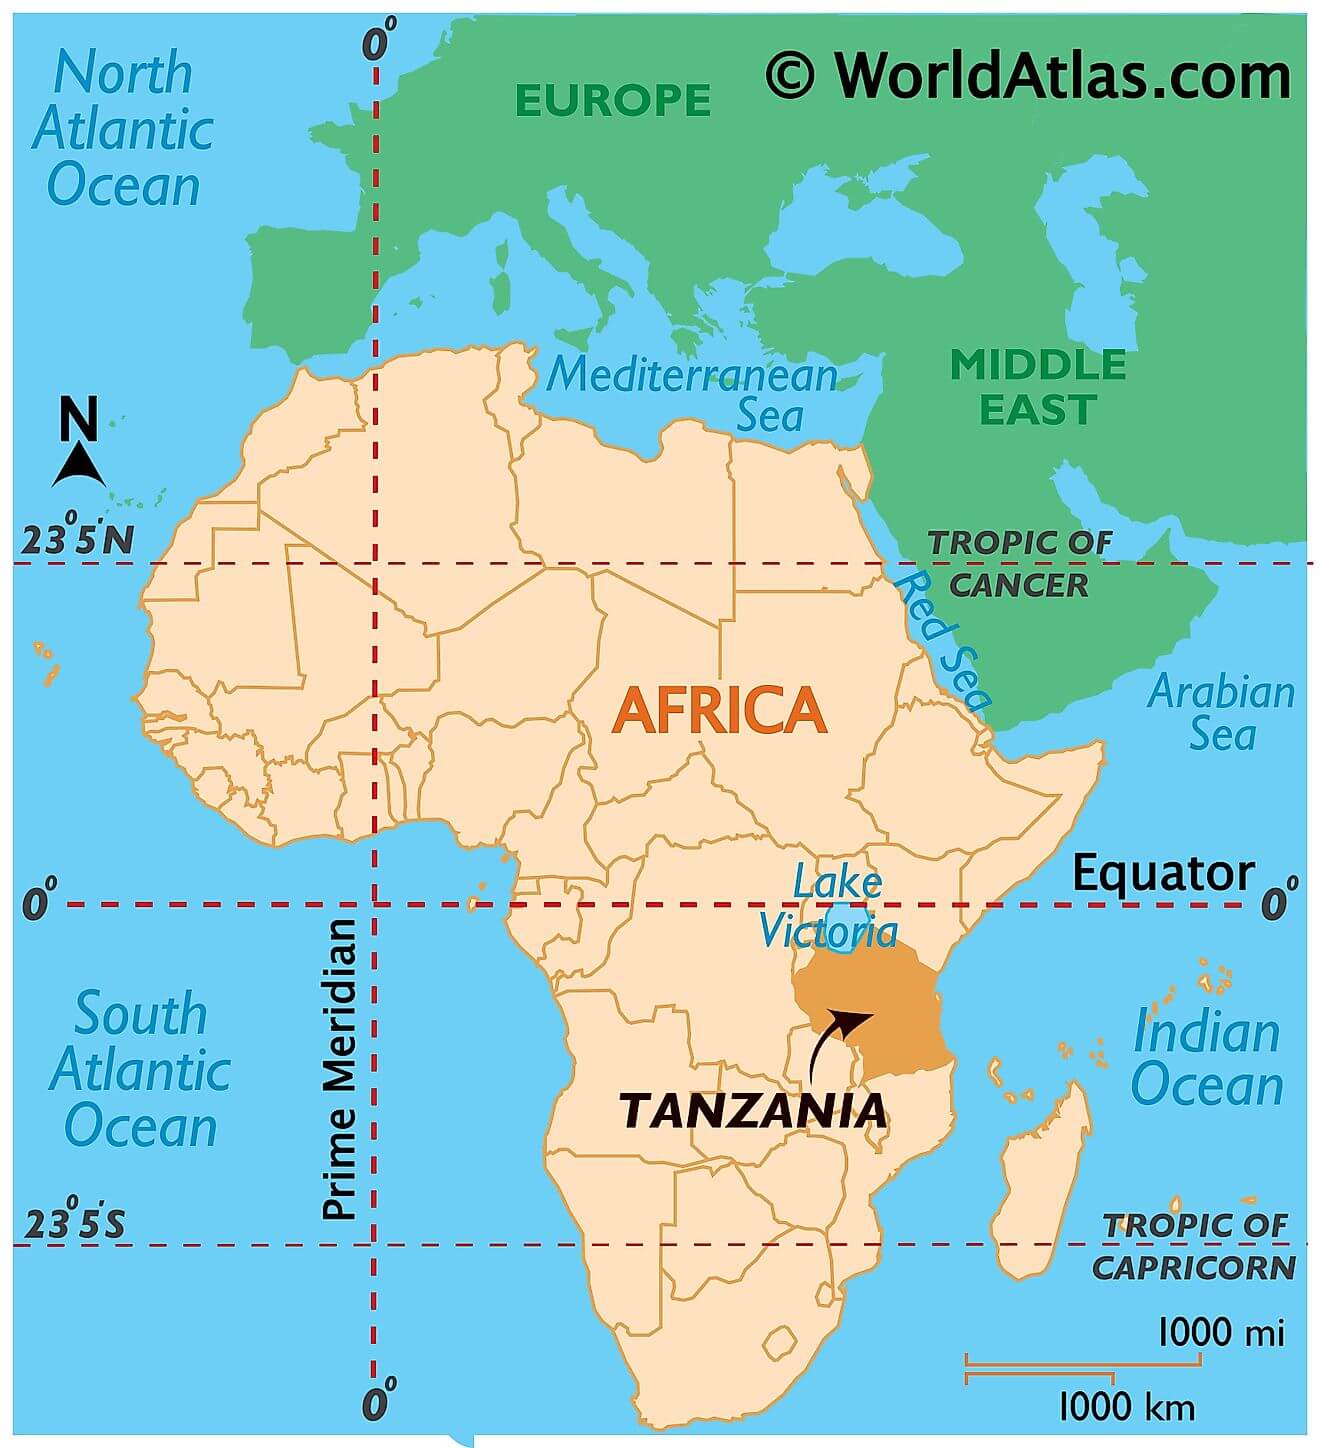 Tanzania ở đâu?